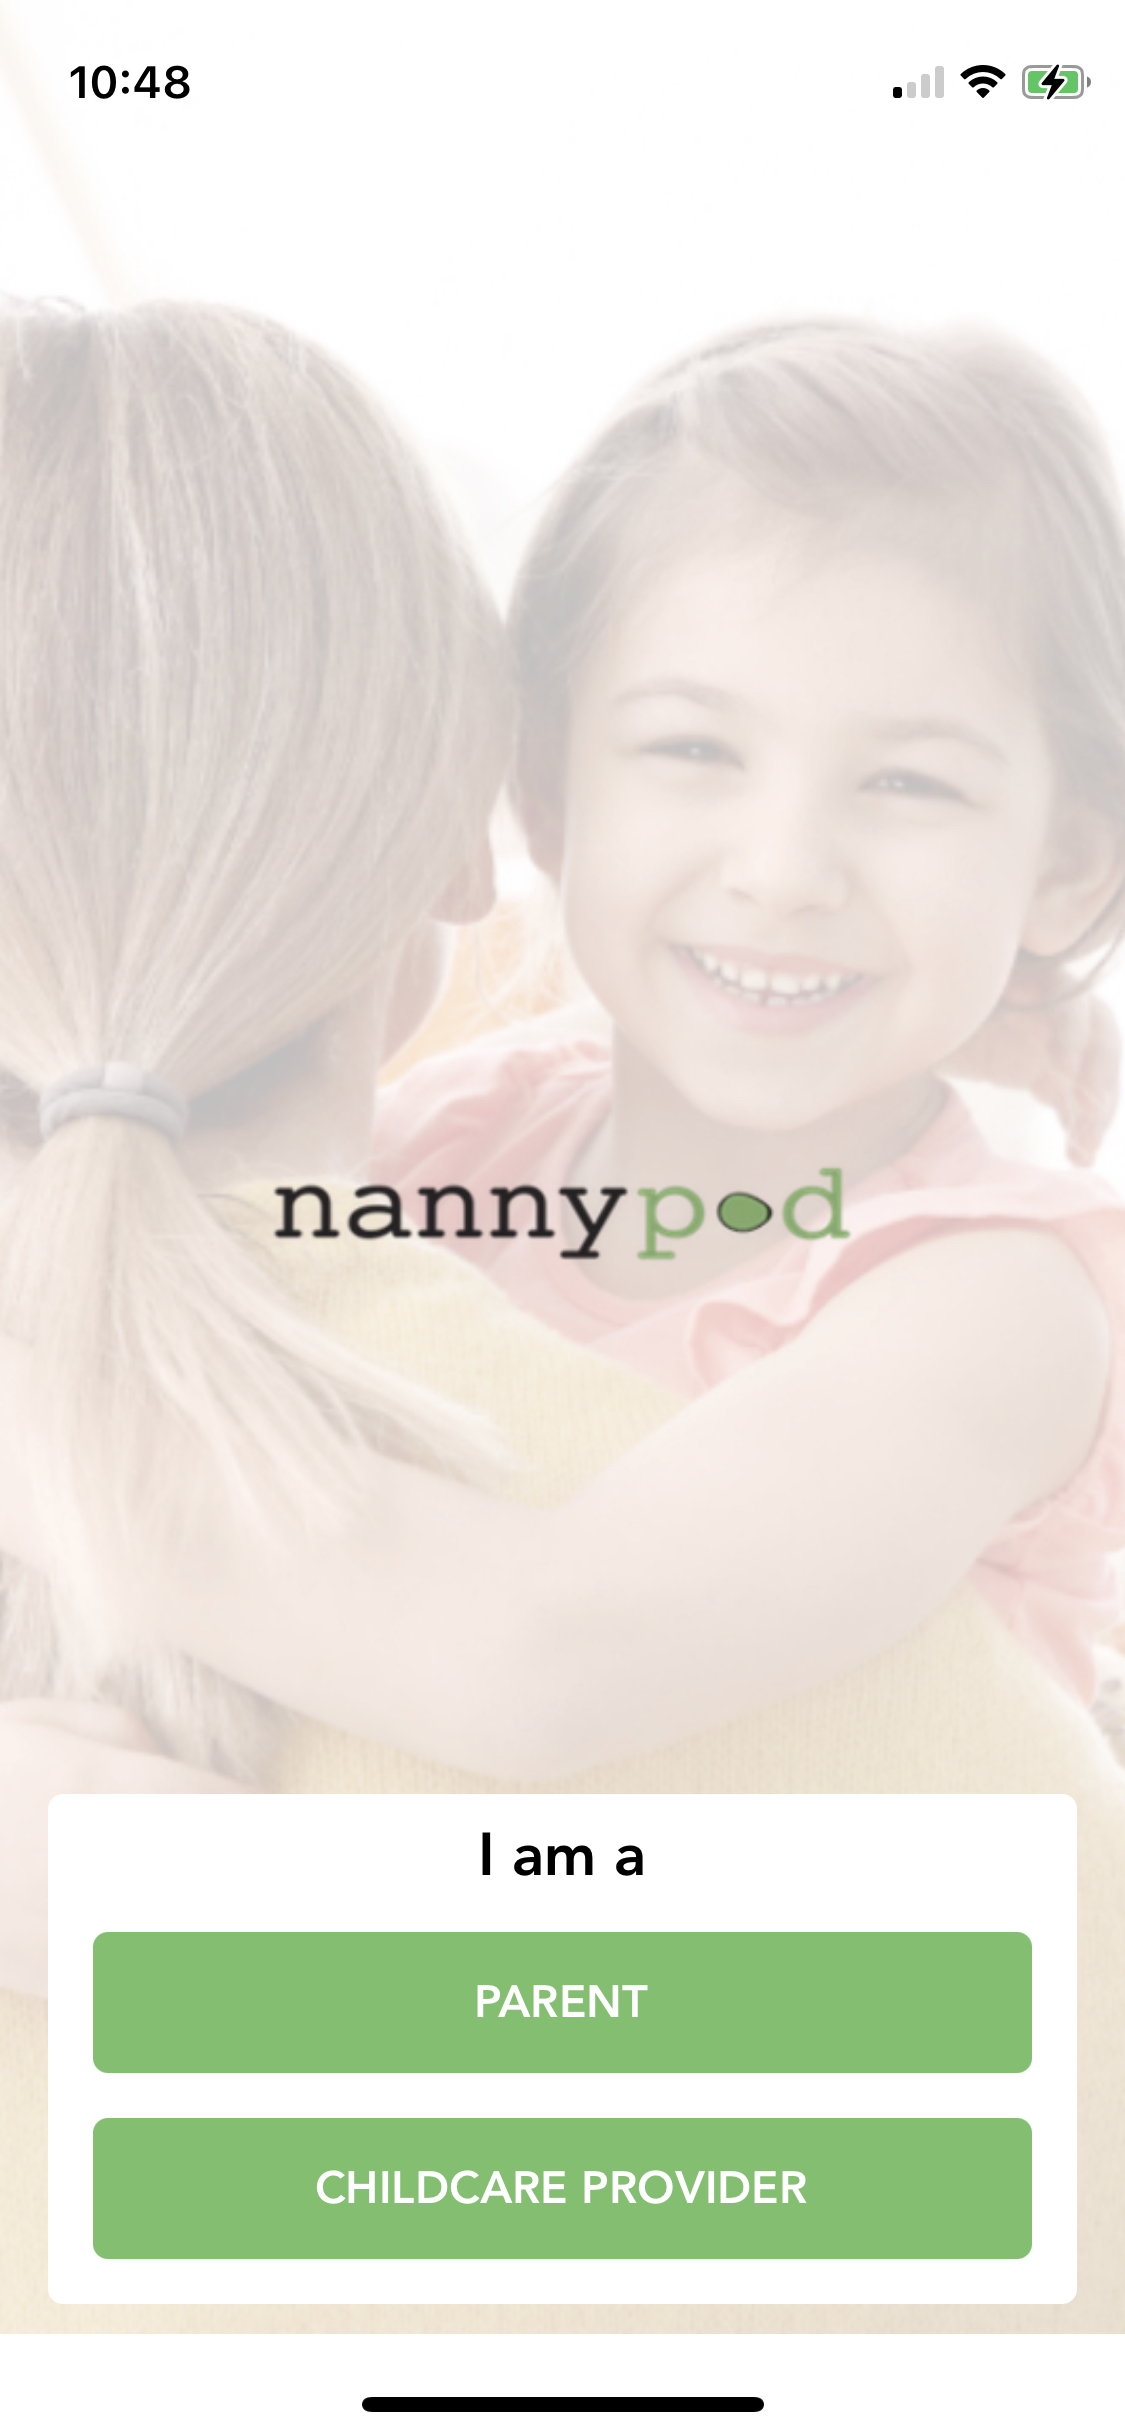 NannyPod App - Sign In